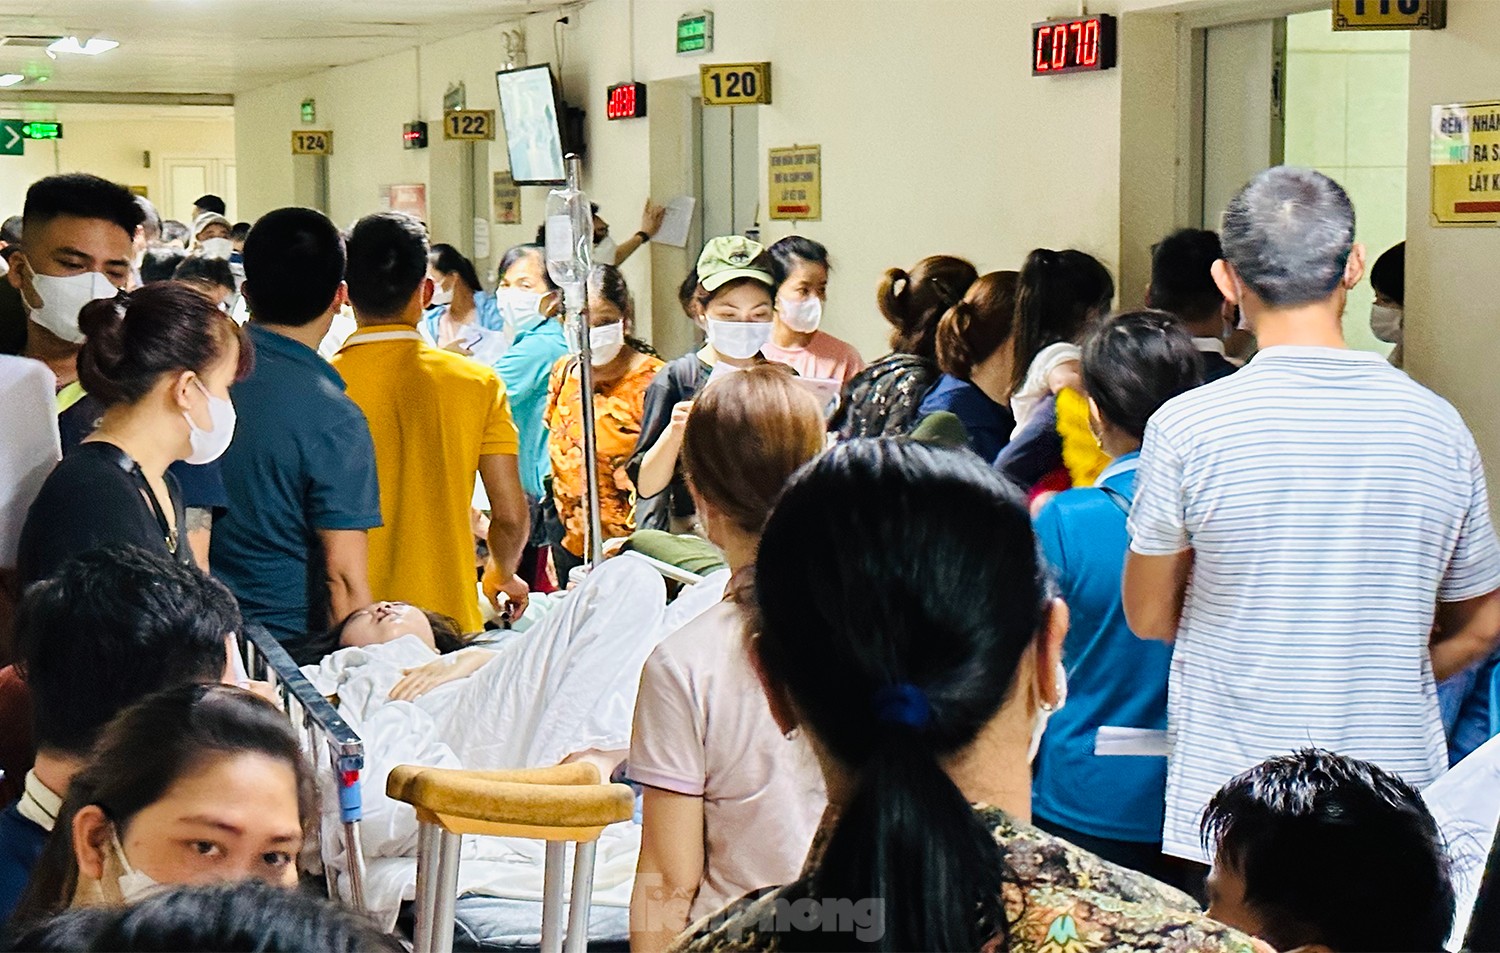 Bệnh viện đông nghịt người xếp hàng chờ khám trong ngày hè nóng 37 độ - Ảnh 6.